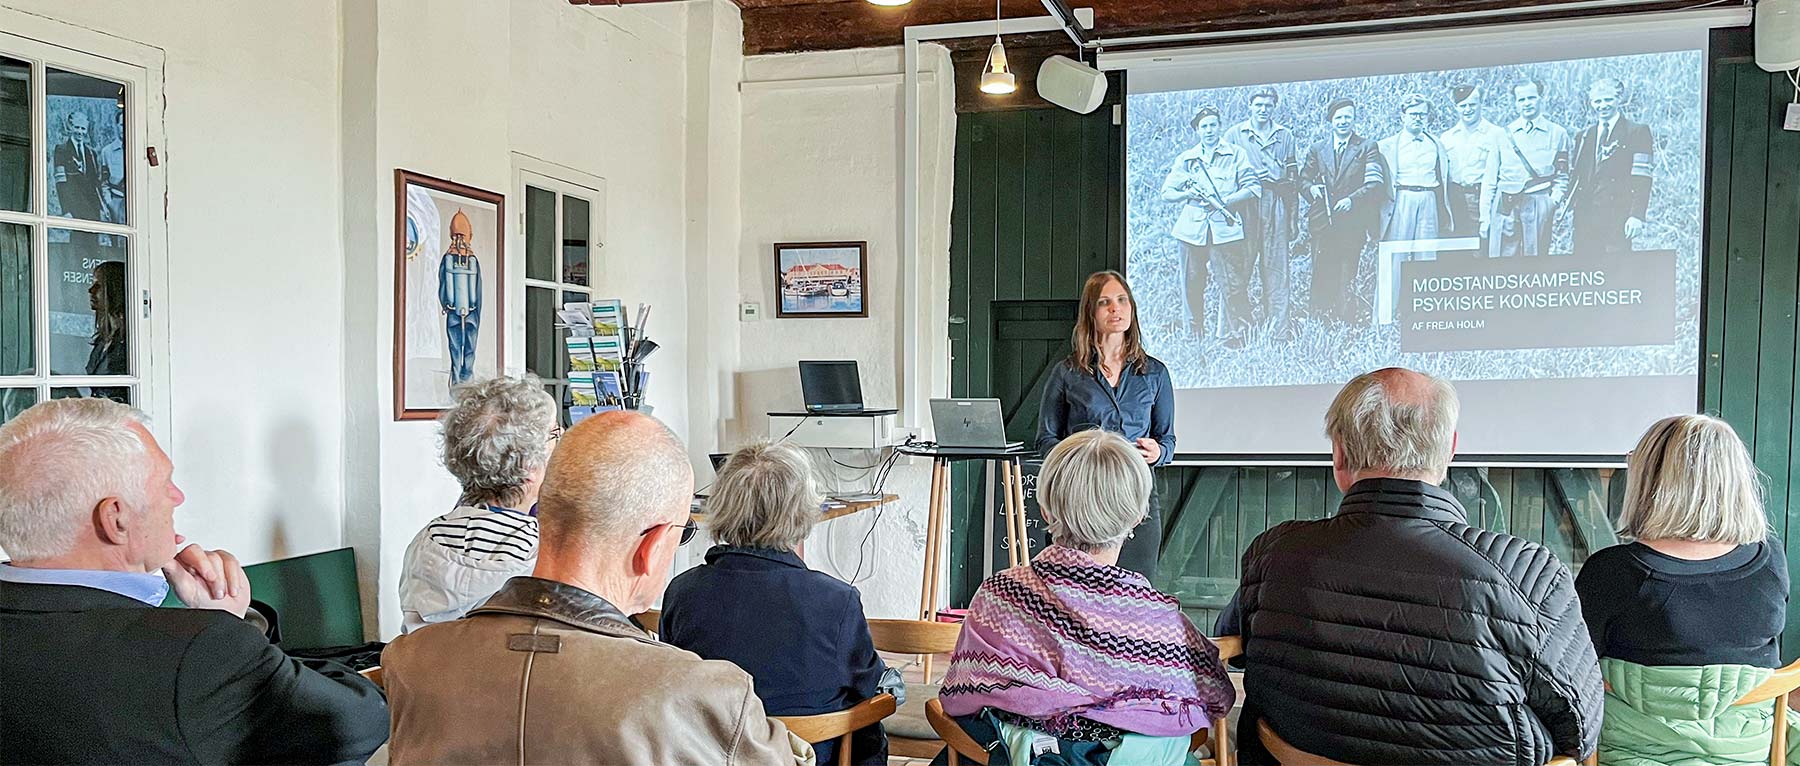 Freja Holm fortæller om de psykiske konsekvenser for danskerne i modstandsbevægelsen. Foto: Museum Amager.